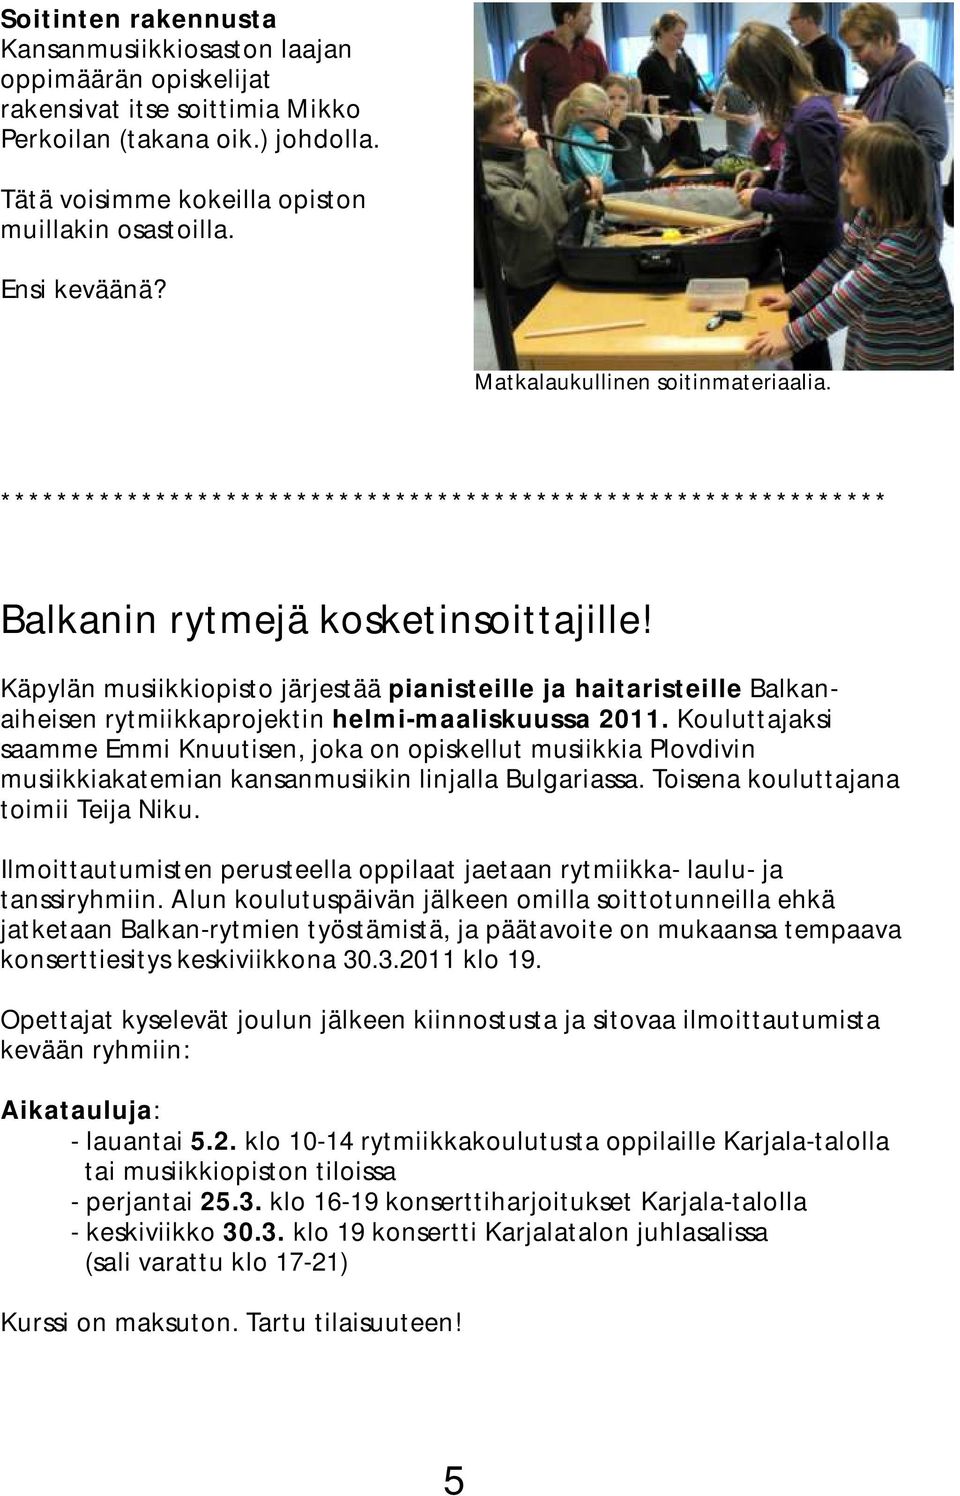 Käpylän musiikkiopisto järjestää pianisteille ja haitaristeille Balkanaiheisen rytmiikkaprojektin helmi-maaliskuussa 2011.